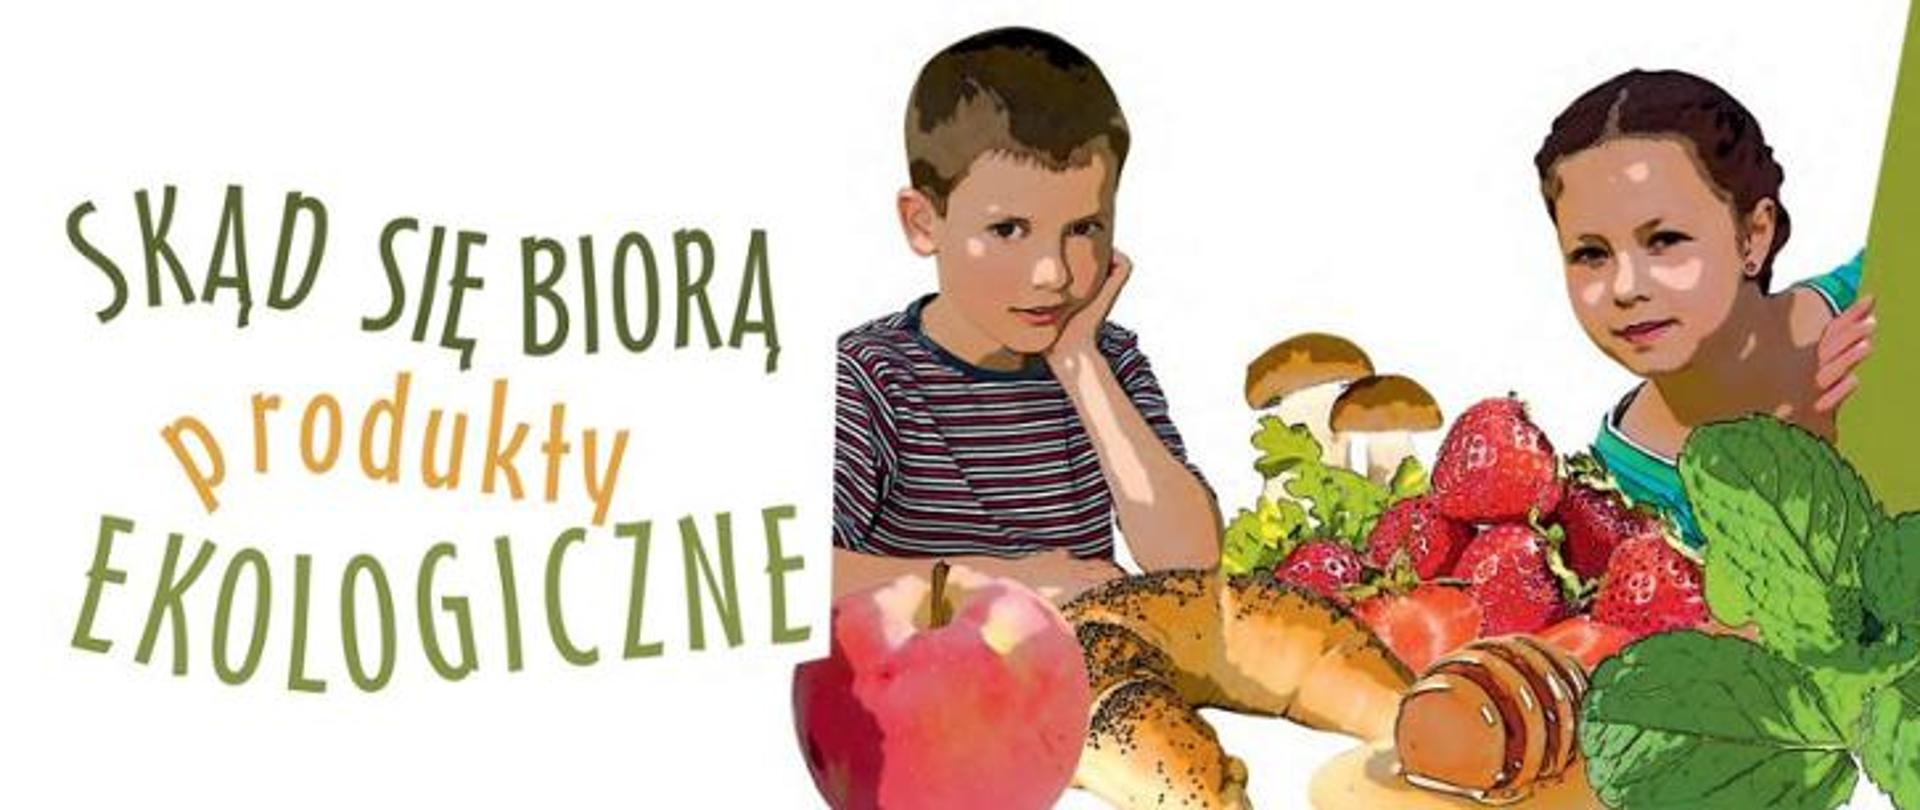 Baner przedstawiający chłopca i dziewczynkę w wieku 5-6 lat obok ekologicznych produktów